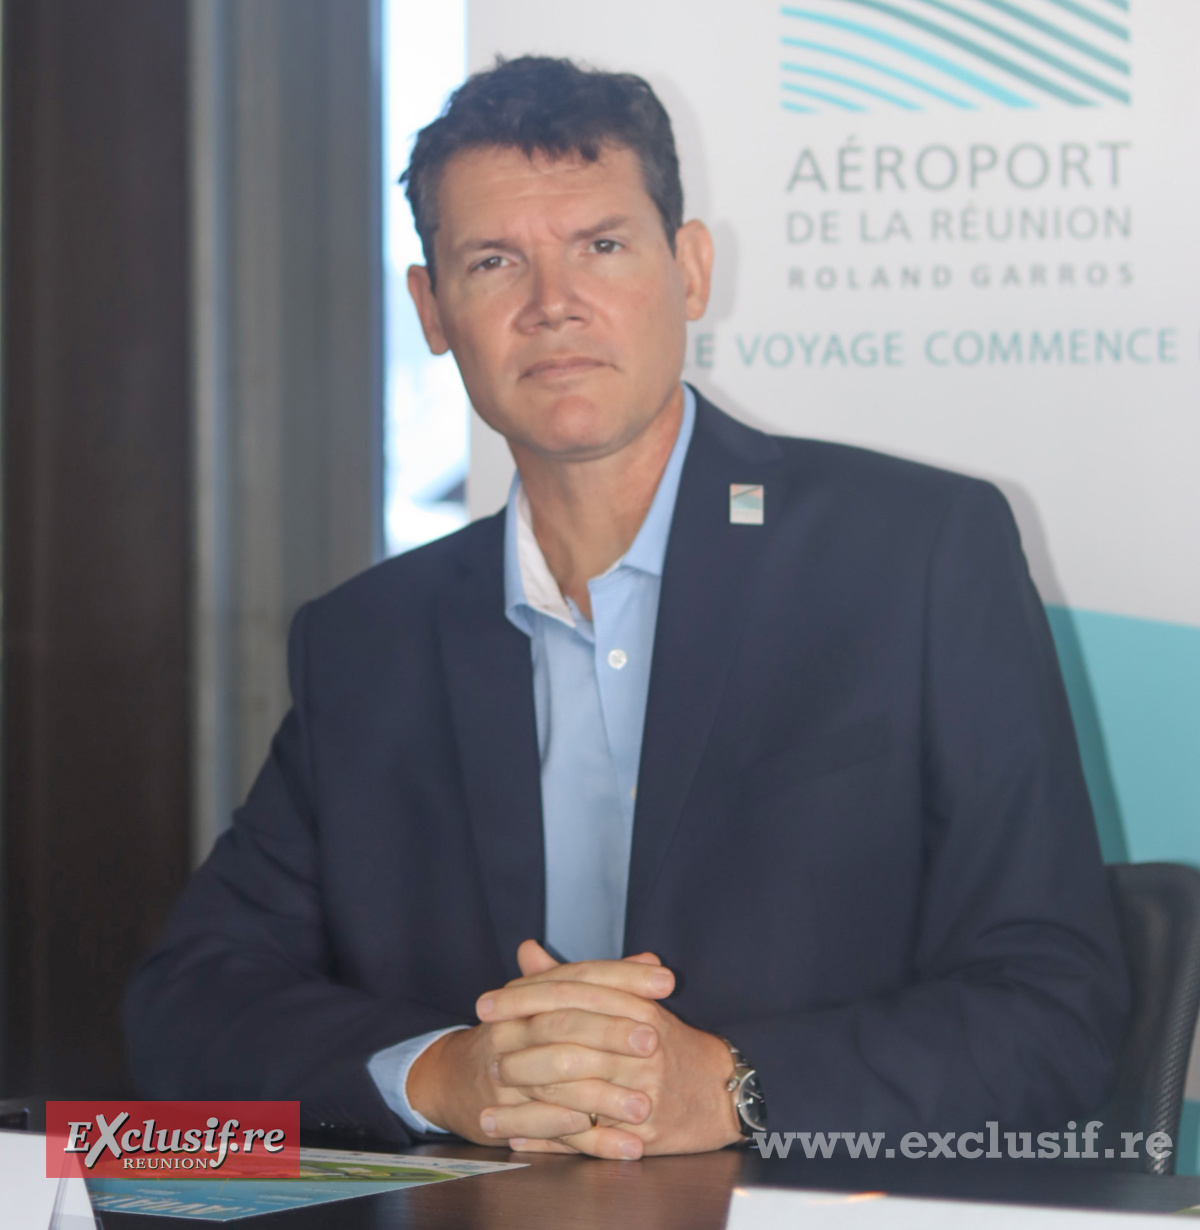 Guillaume Branlat, président du directoire Aéroport Roland Garros